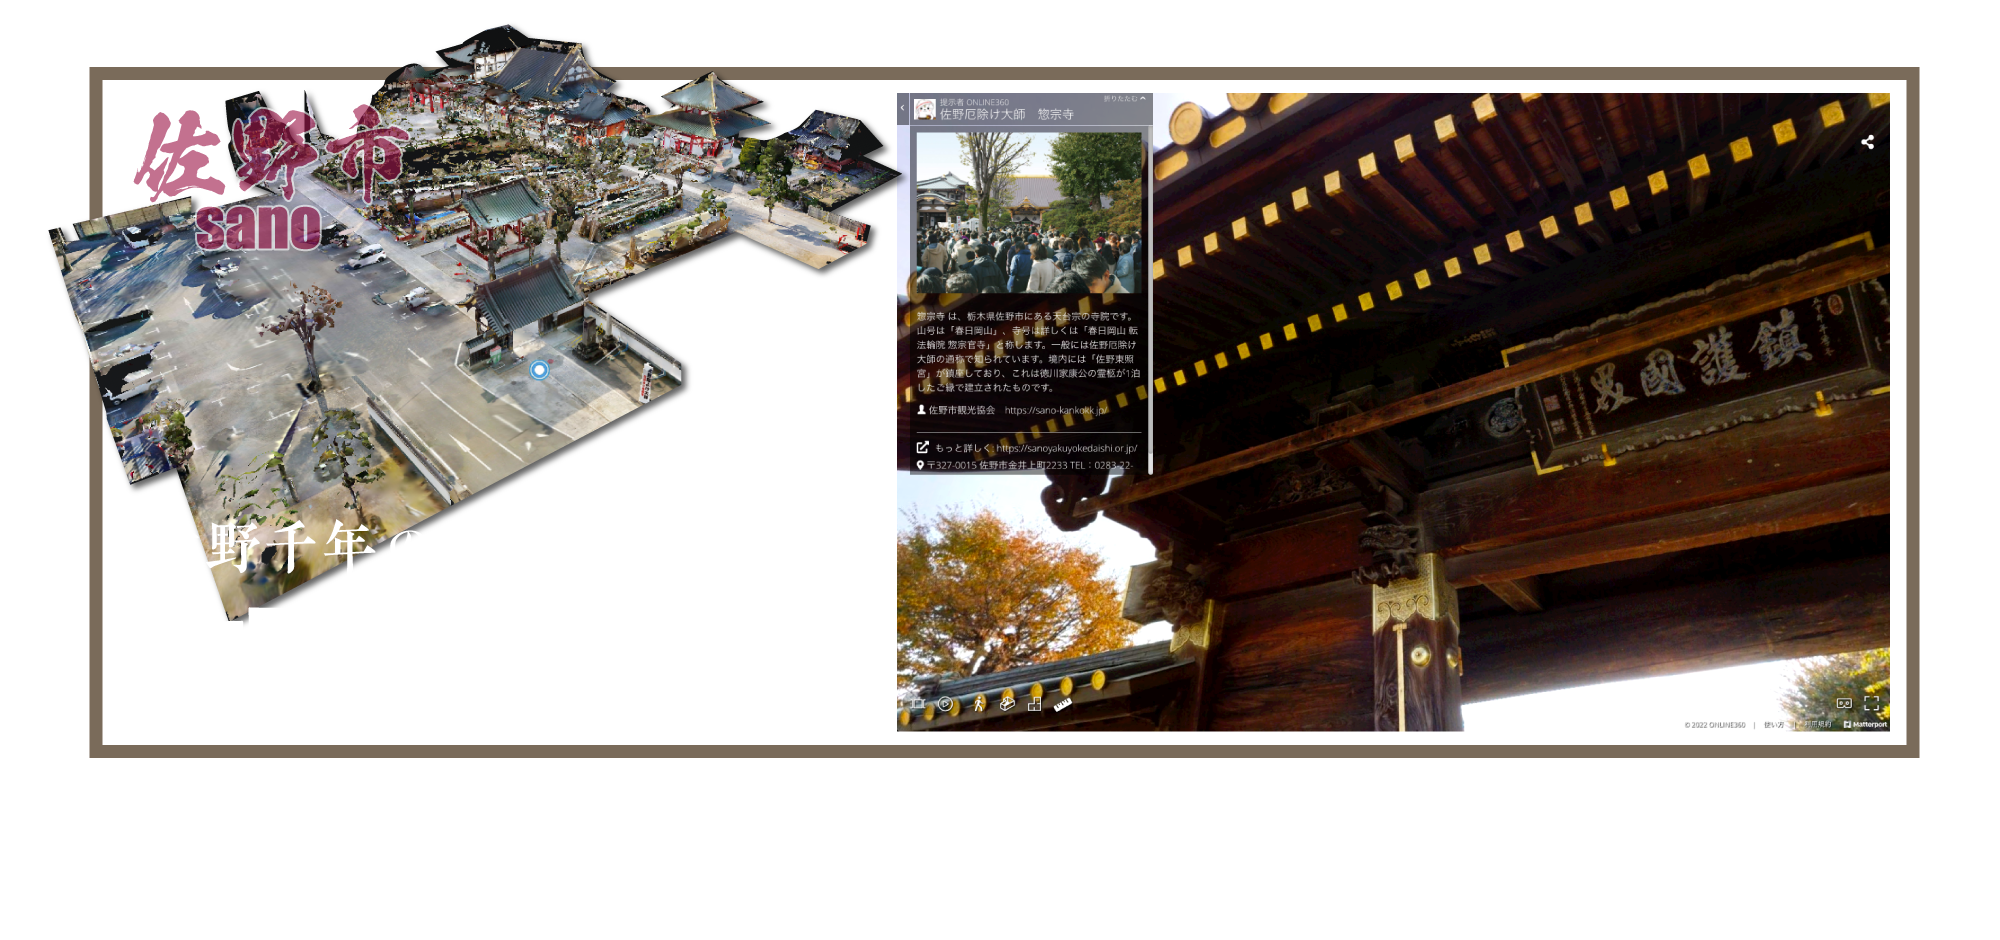 佐野千年の歴史を知る古寺　佐野厄除け大師のバーチャルツアー　Soshuji Temple （Sano Yakuyoke Daishi）Ancient Temple Over a Thousand Years of History Sano City